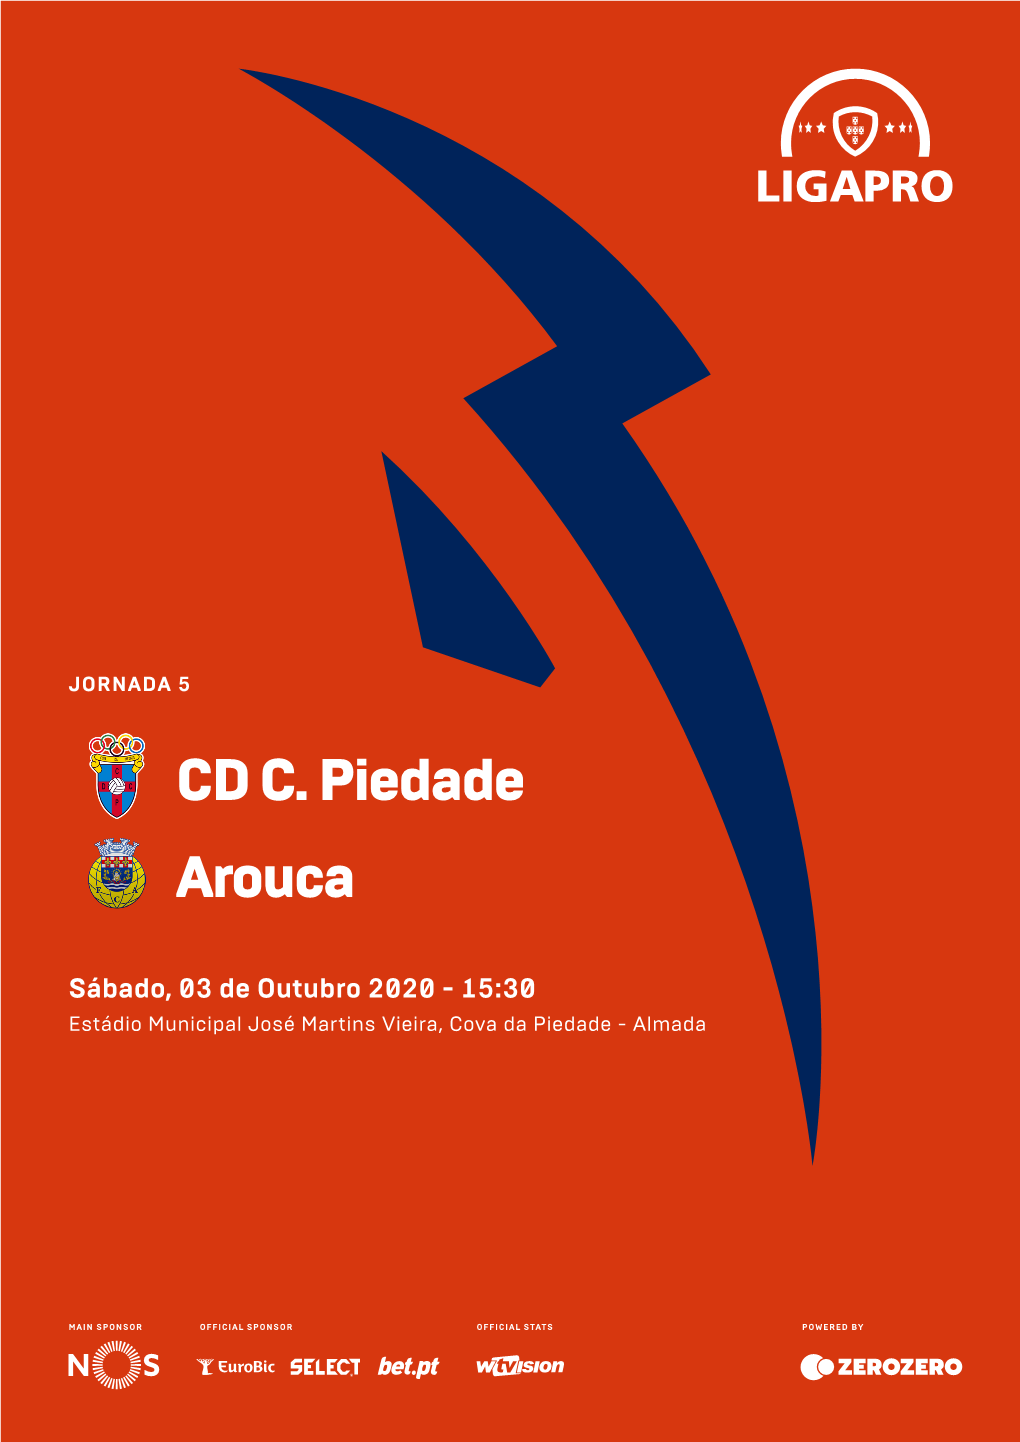 CD C. Piedade Arouca